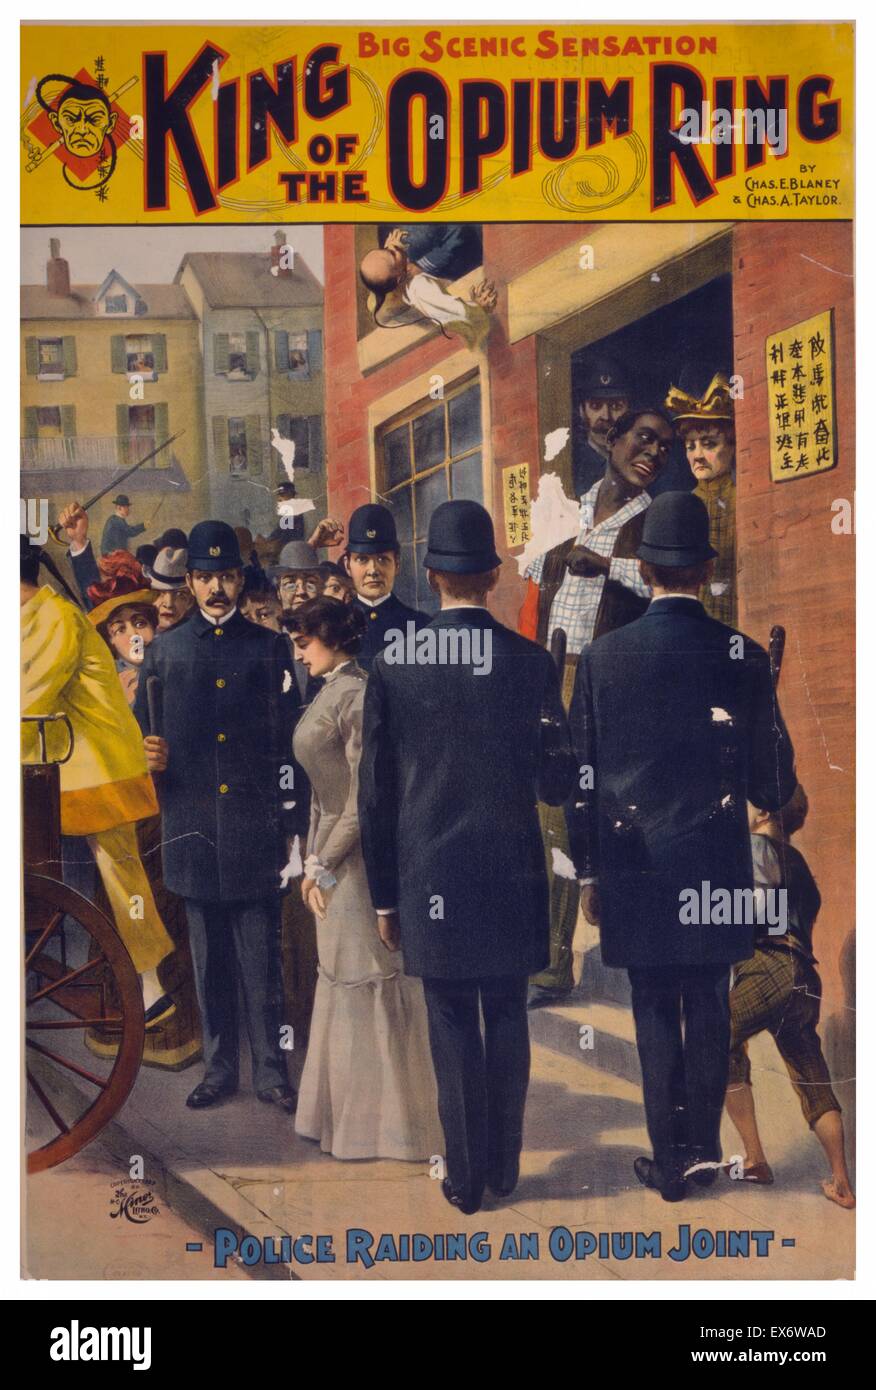 Un Americano di oppio den è razziato dalla polizia. Re dell'anello di oppio grande sensazione scenica : da Chas. E. Blaney (1944) & Chas. A. Taylor (1942). Colore. c1899. Foto Stock